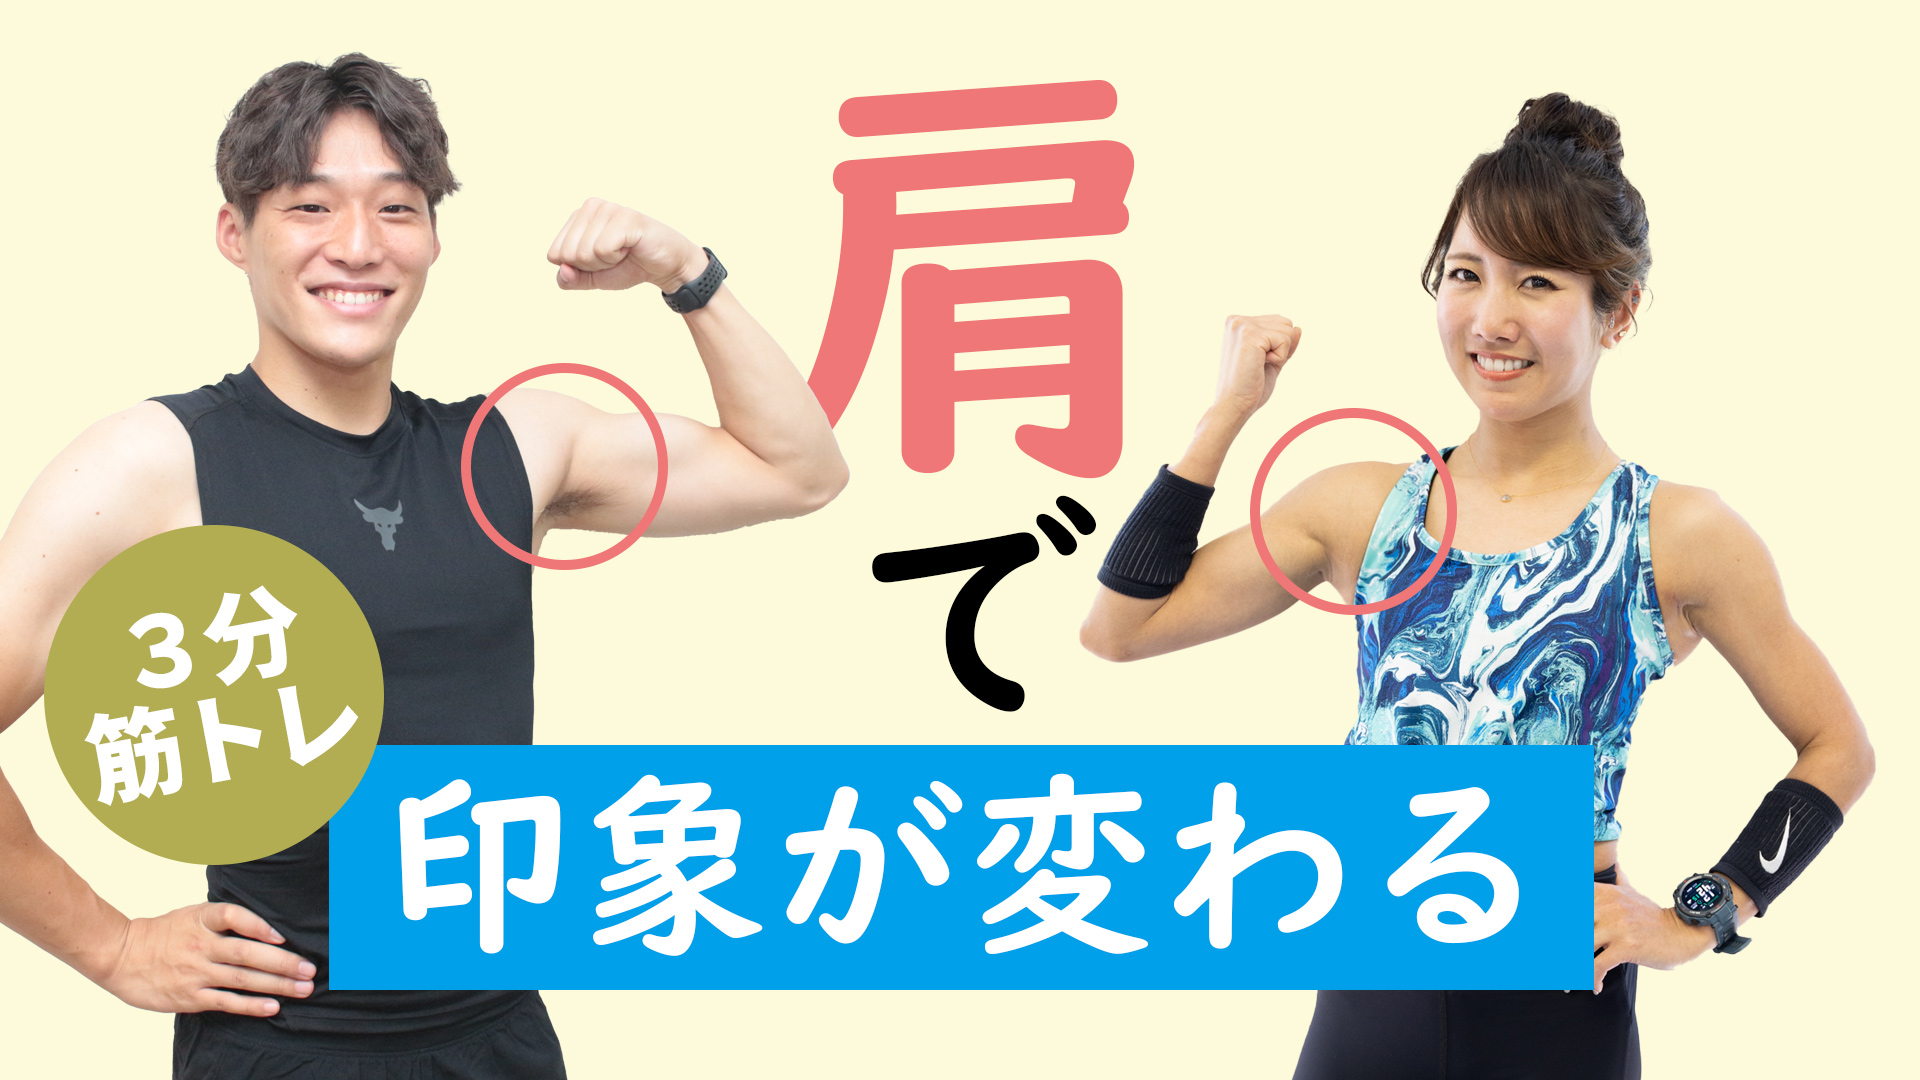 肩の筋トレ 男性も女性も 肩 を鍛えると印象が変わる 3分間のダンベルトレーニング トレーニング スポーツ Melos